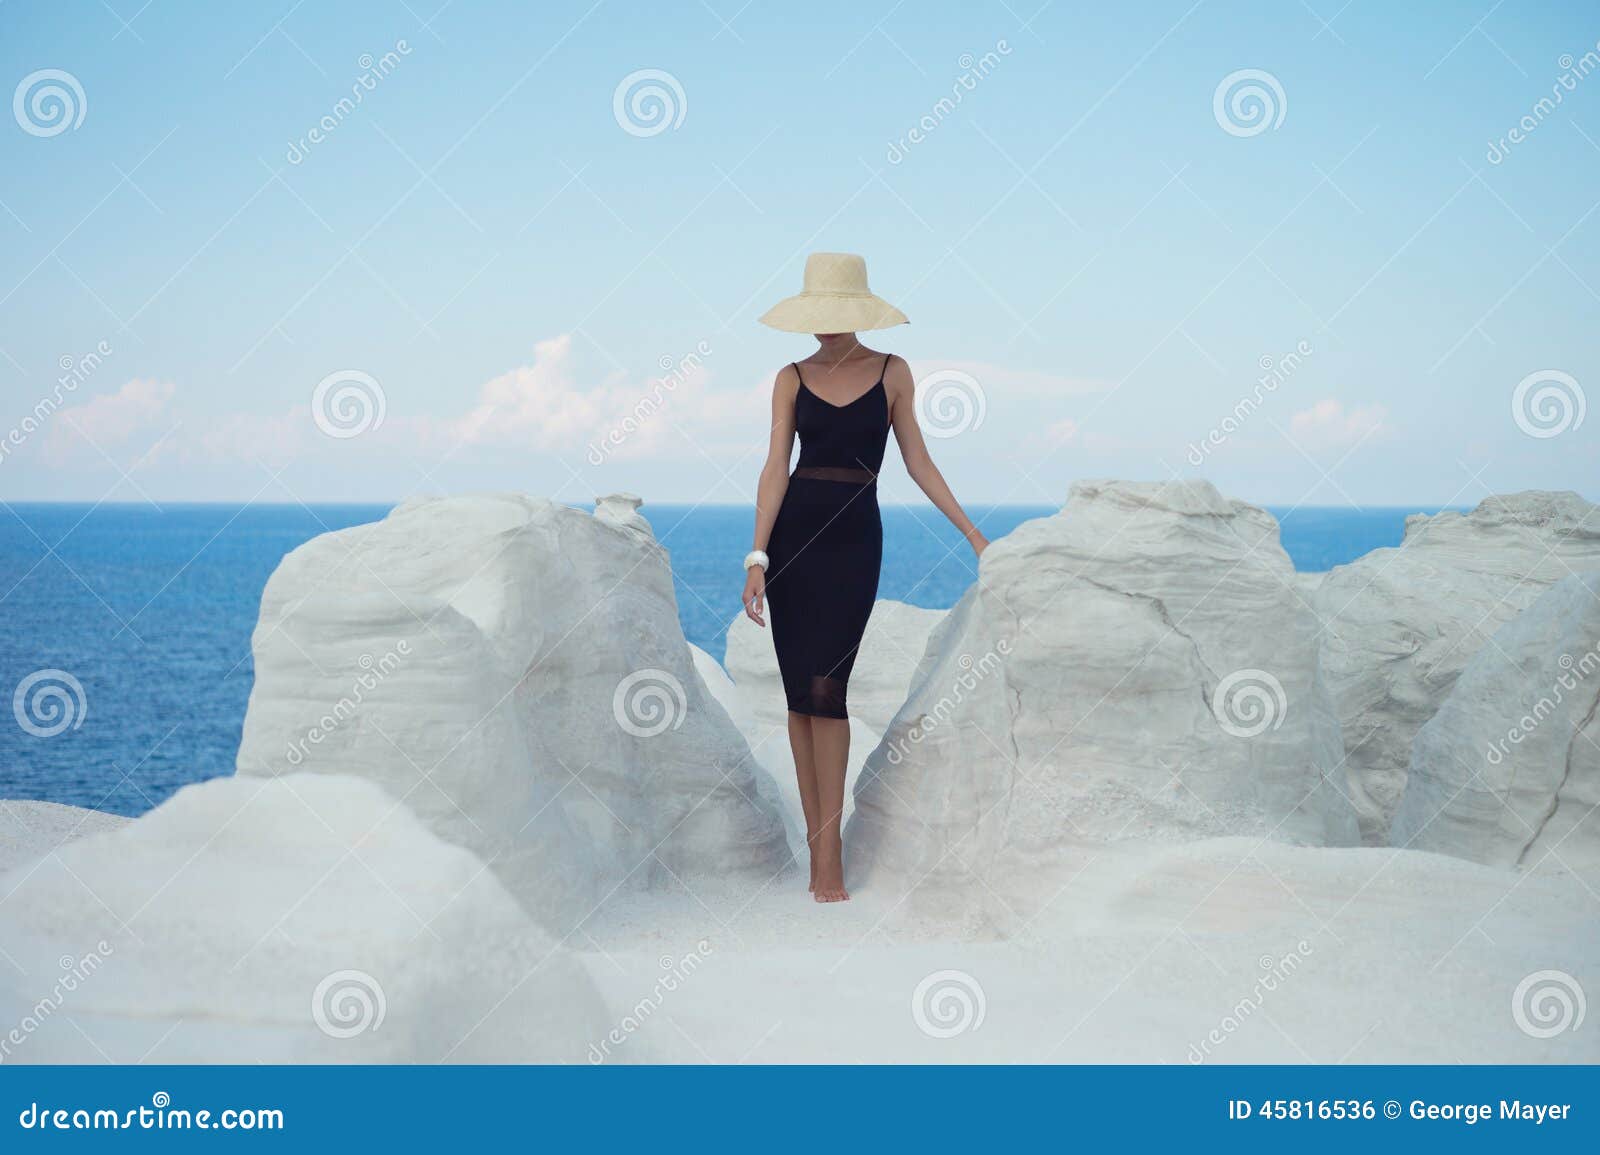 lady in hat in an unusual landscape